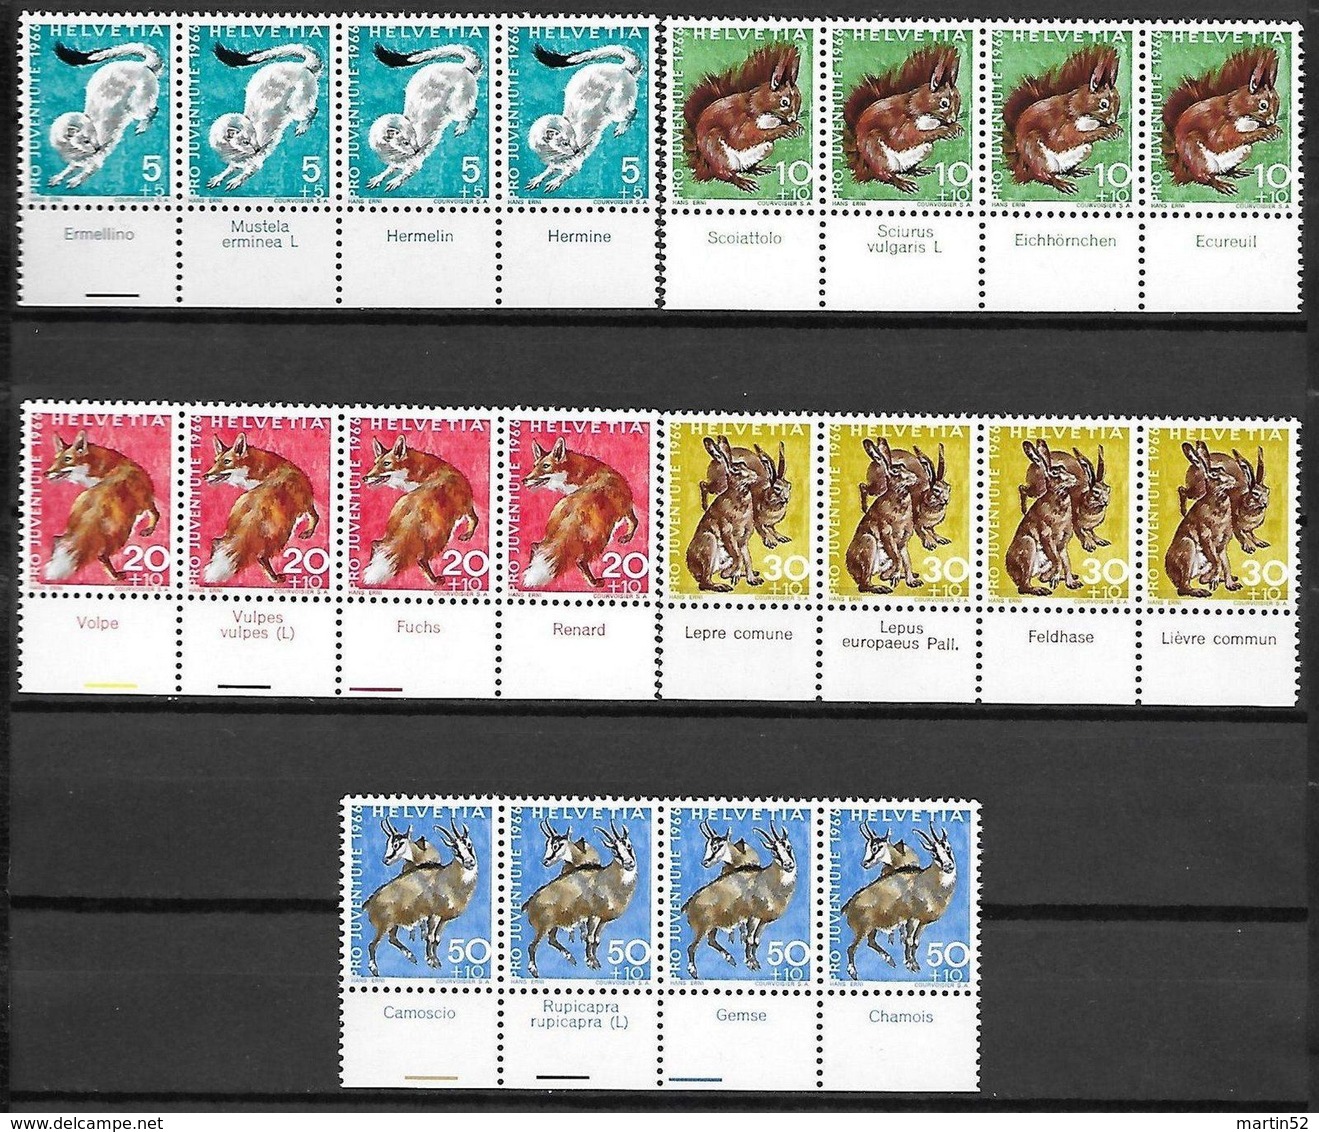 Schweiz Suisse 1965/66: Pro Juventute Zu WI 210-219  Wildtiere Animaux Sauvage ERNI ** MNH + Tab 4-sprachig (CHF 68.80) - Wild